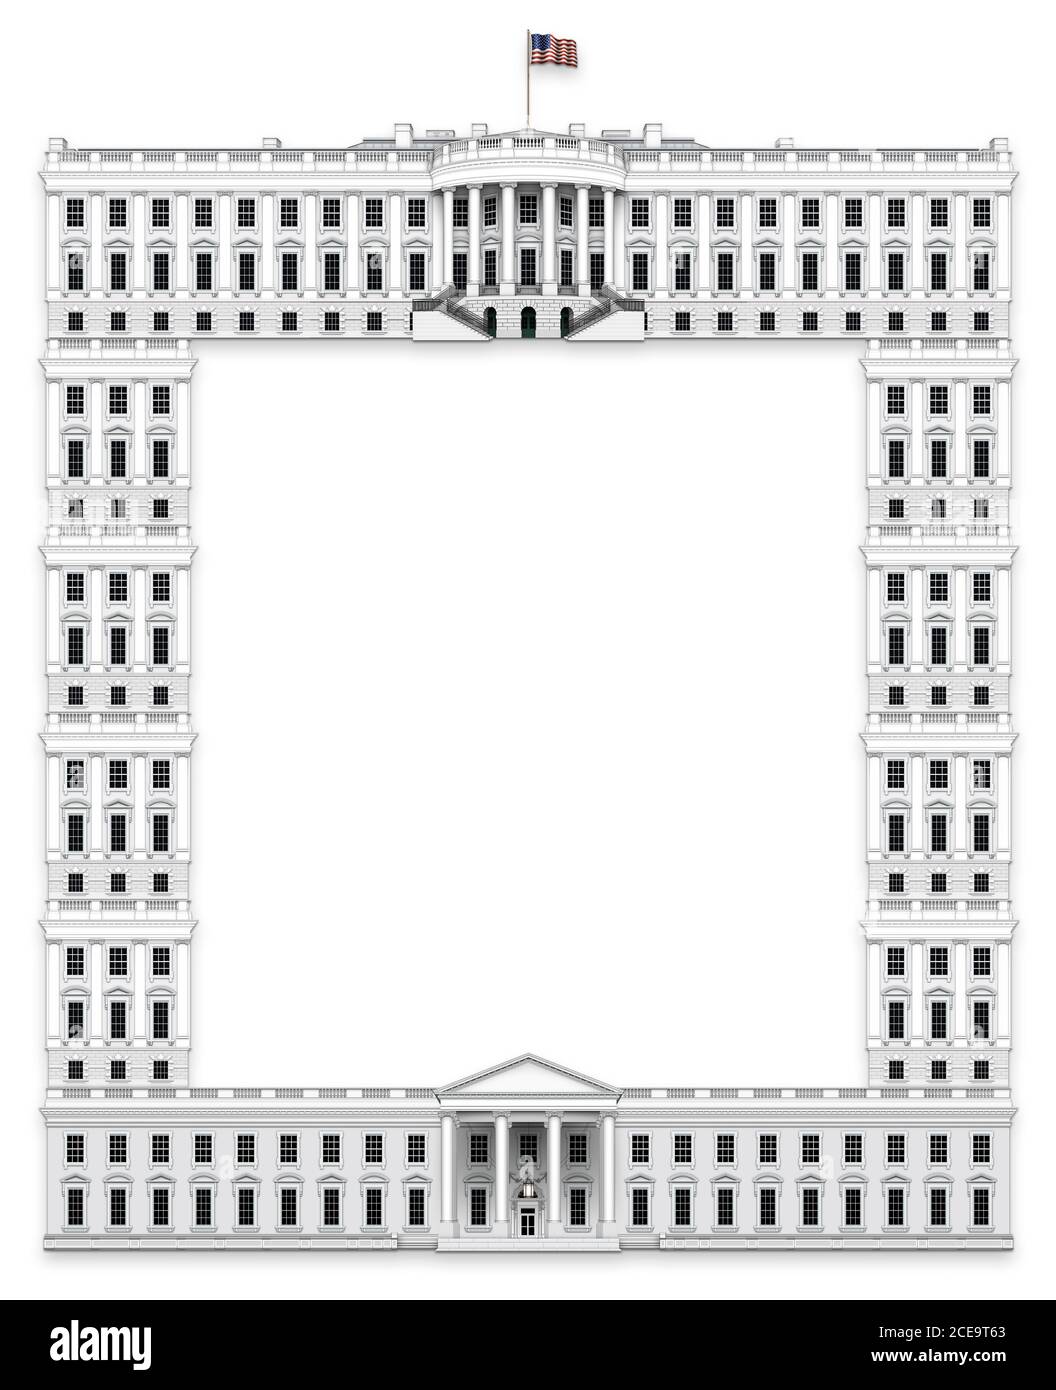 La frontière de l'exécutif présidentiel a fait avec la Maison Blanche - vue du sud comme le haut, vue du nord comme le bas, et avec des fenêtres et des colonnes de l'ICM Banque D'Images